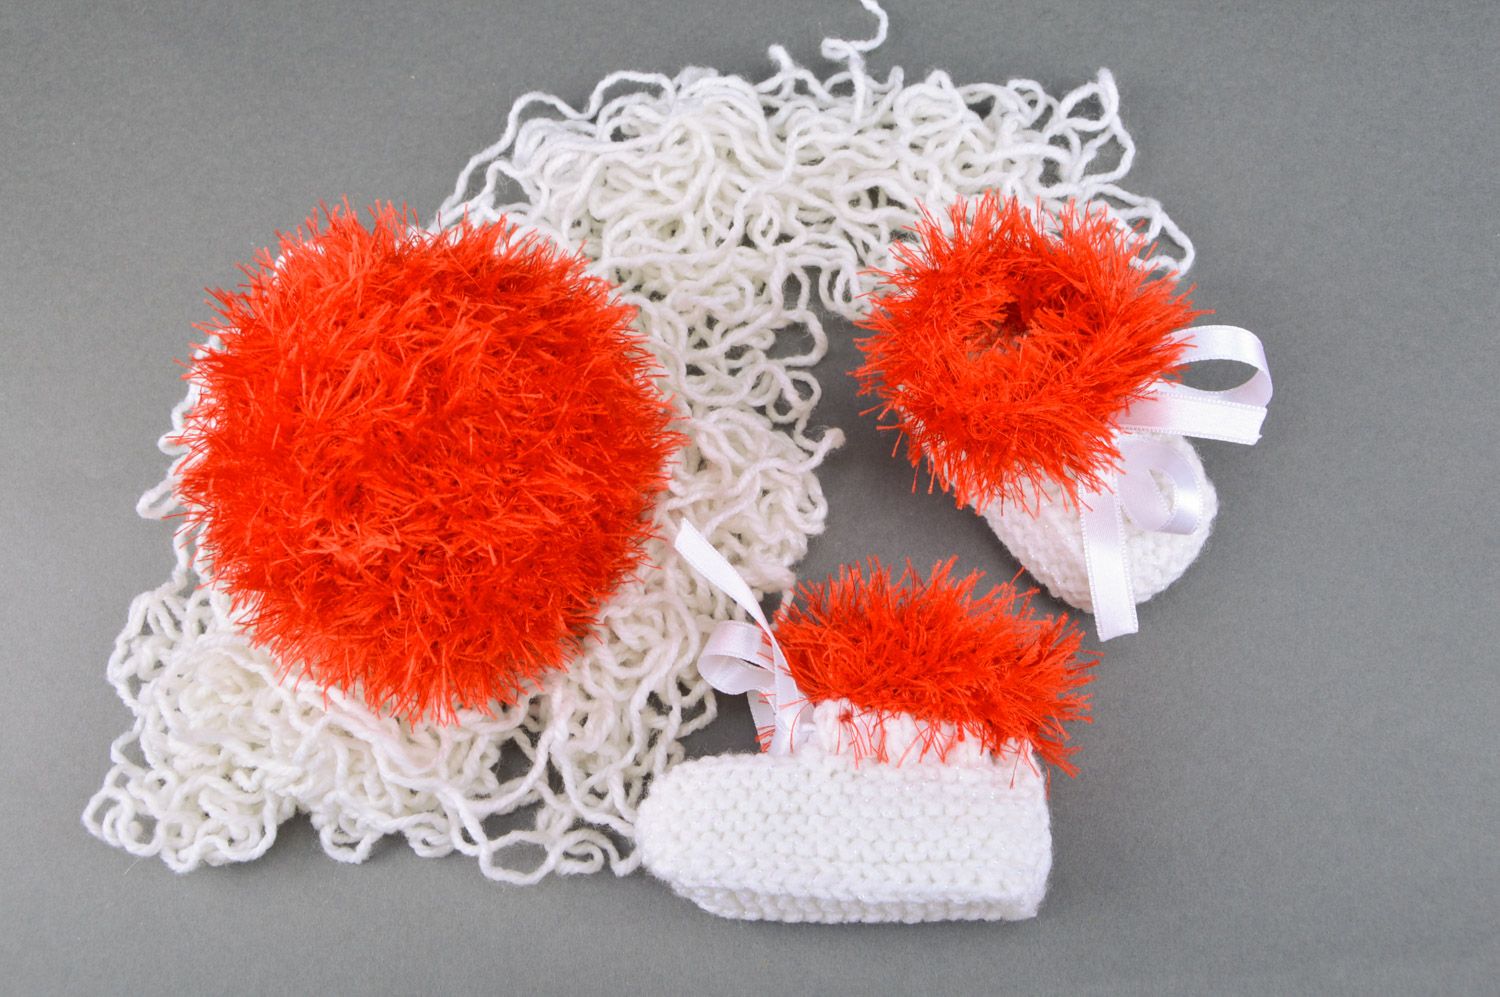 Chaussons de bébé tricotés blanc-rouge et balle tricotée rouge faits main photo 5